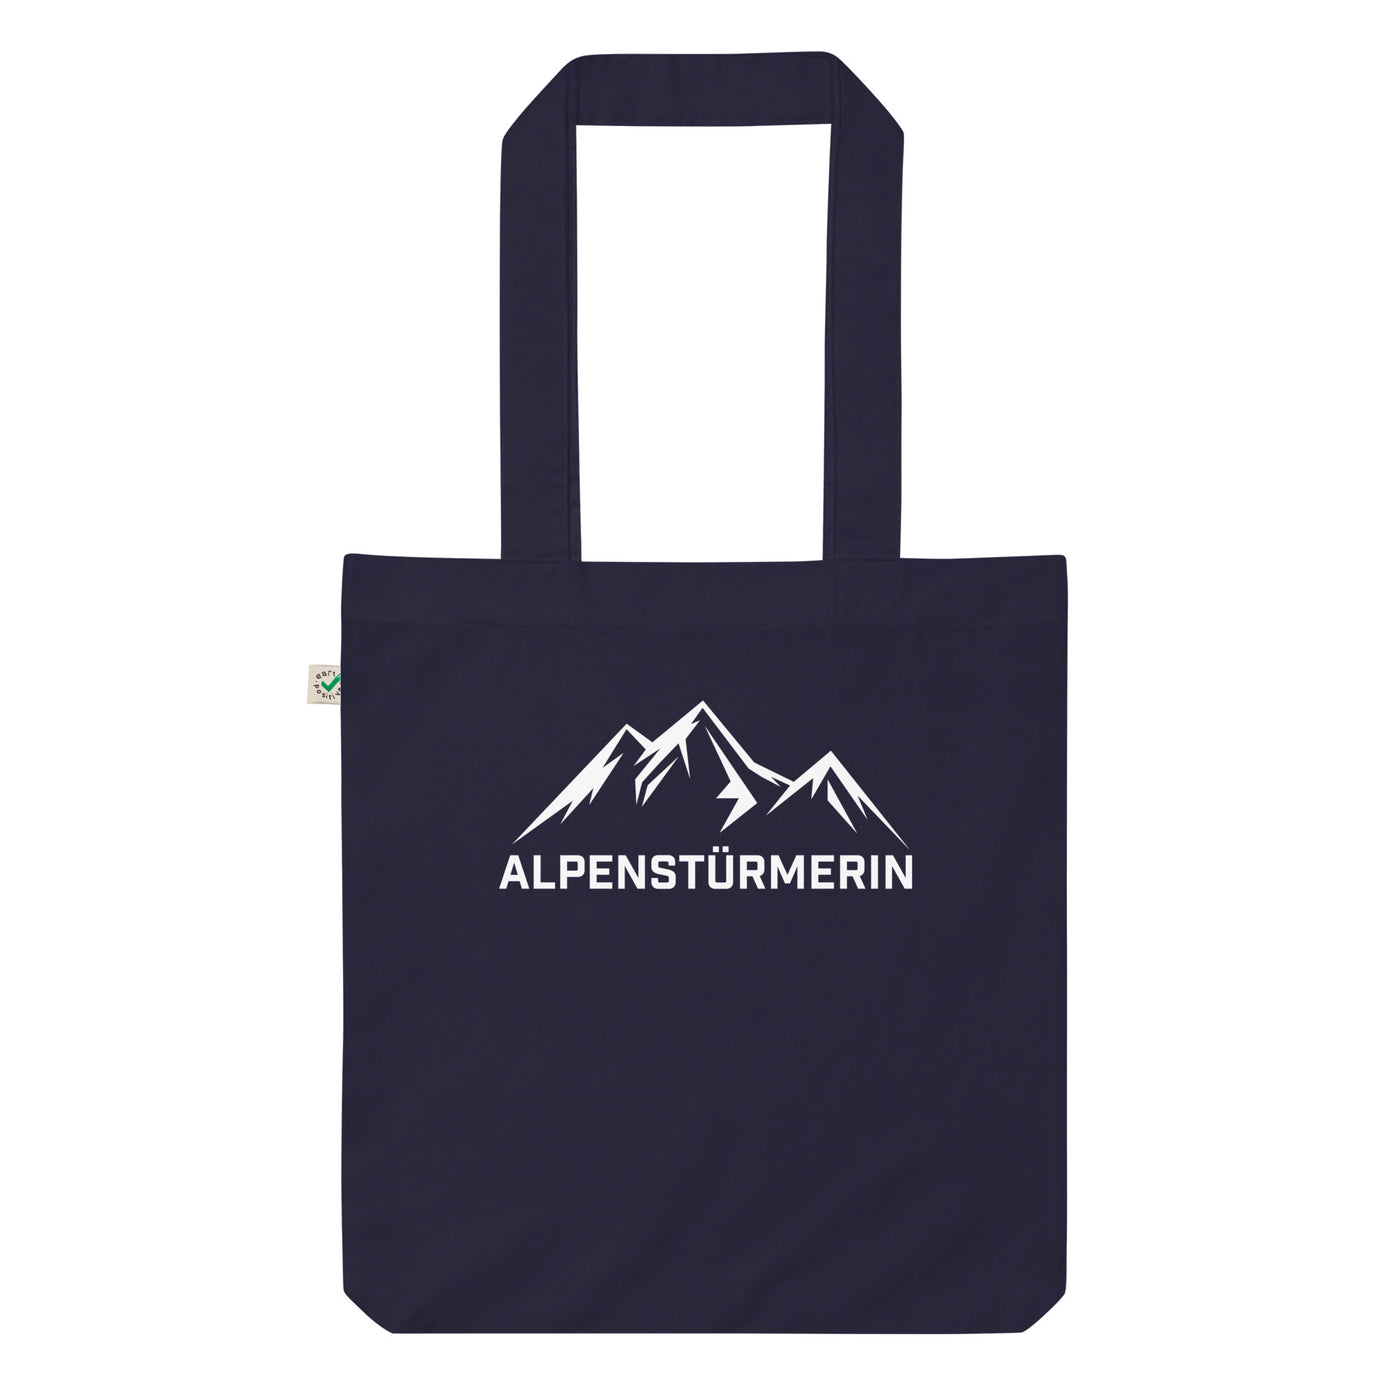 Alpenstürmerin - Organic Einkaufstasche berge wandern